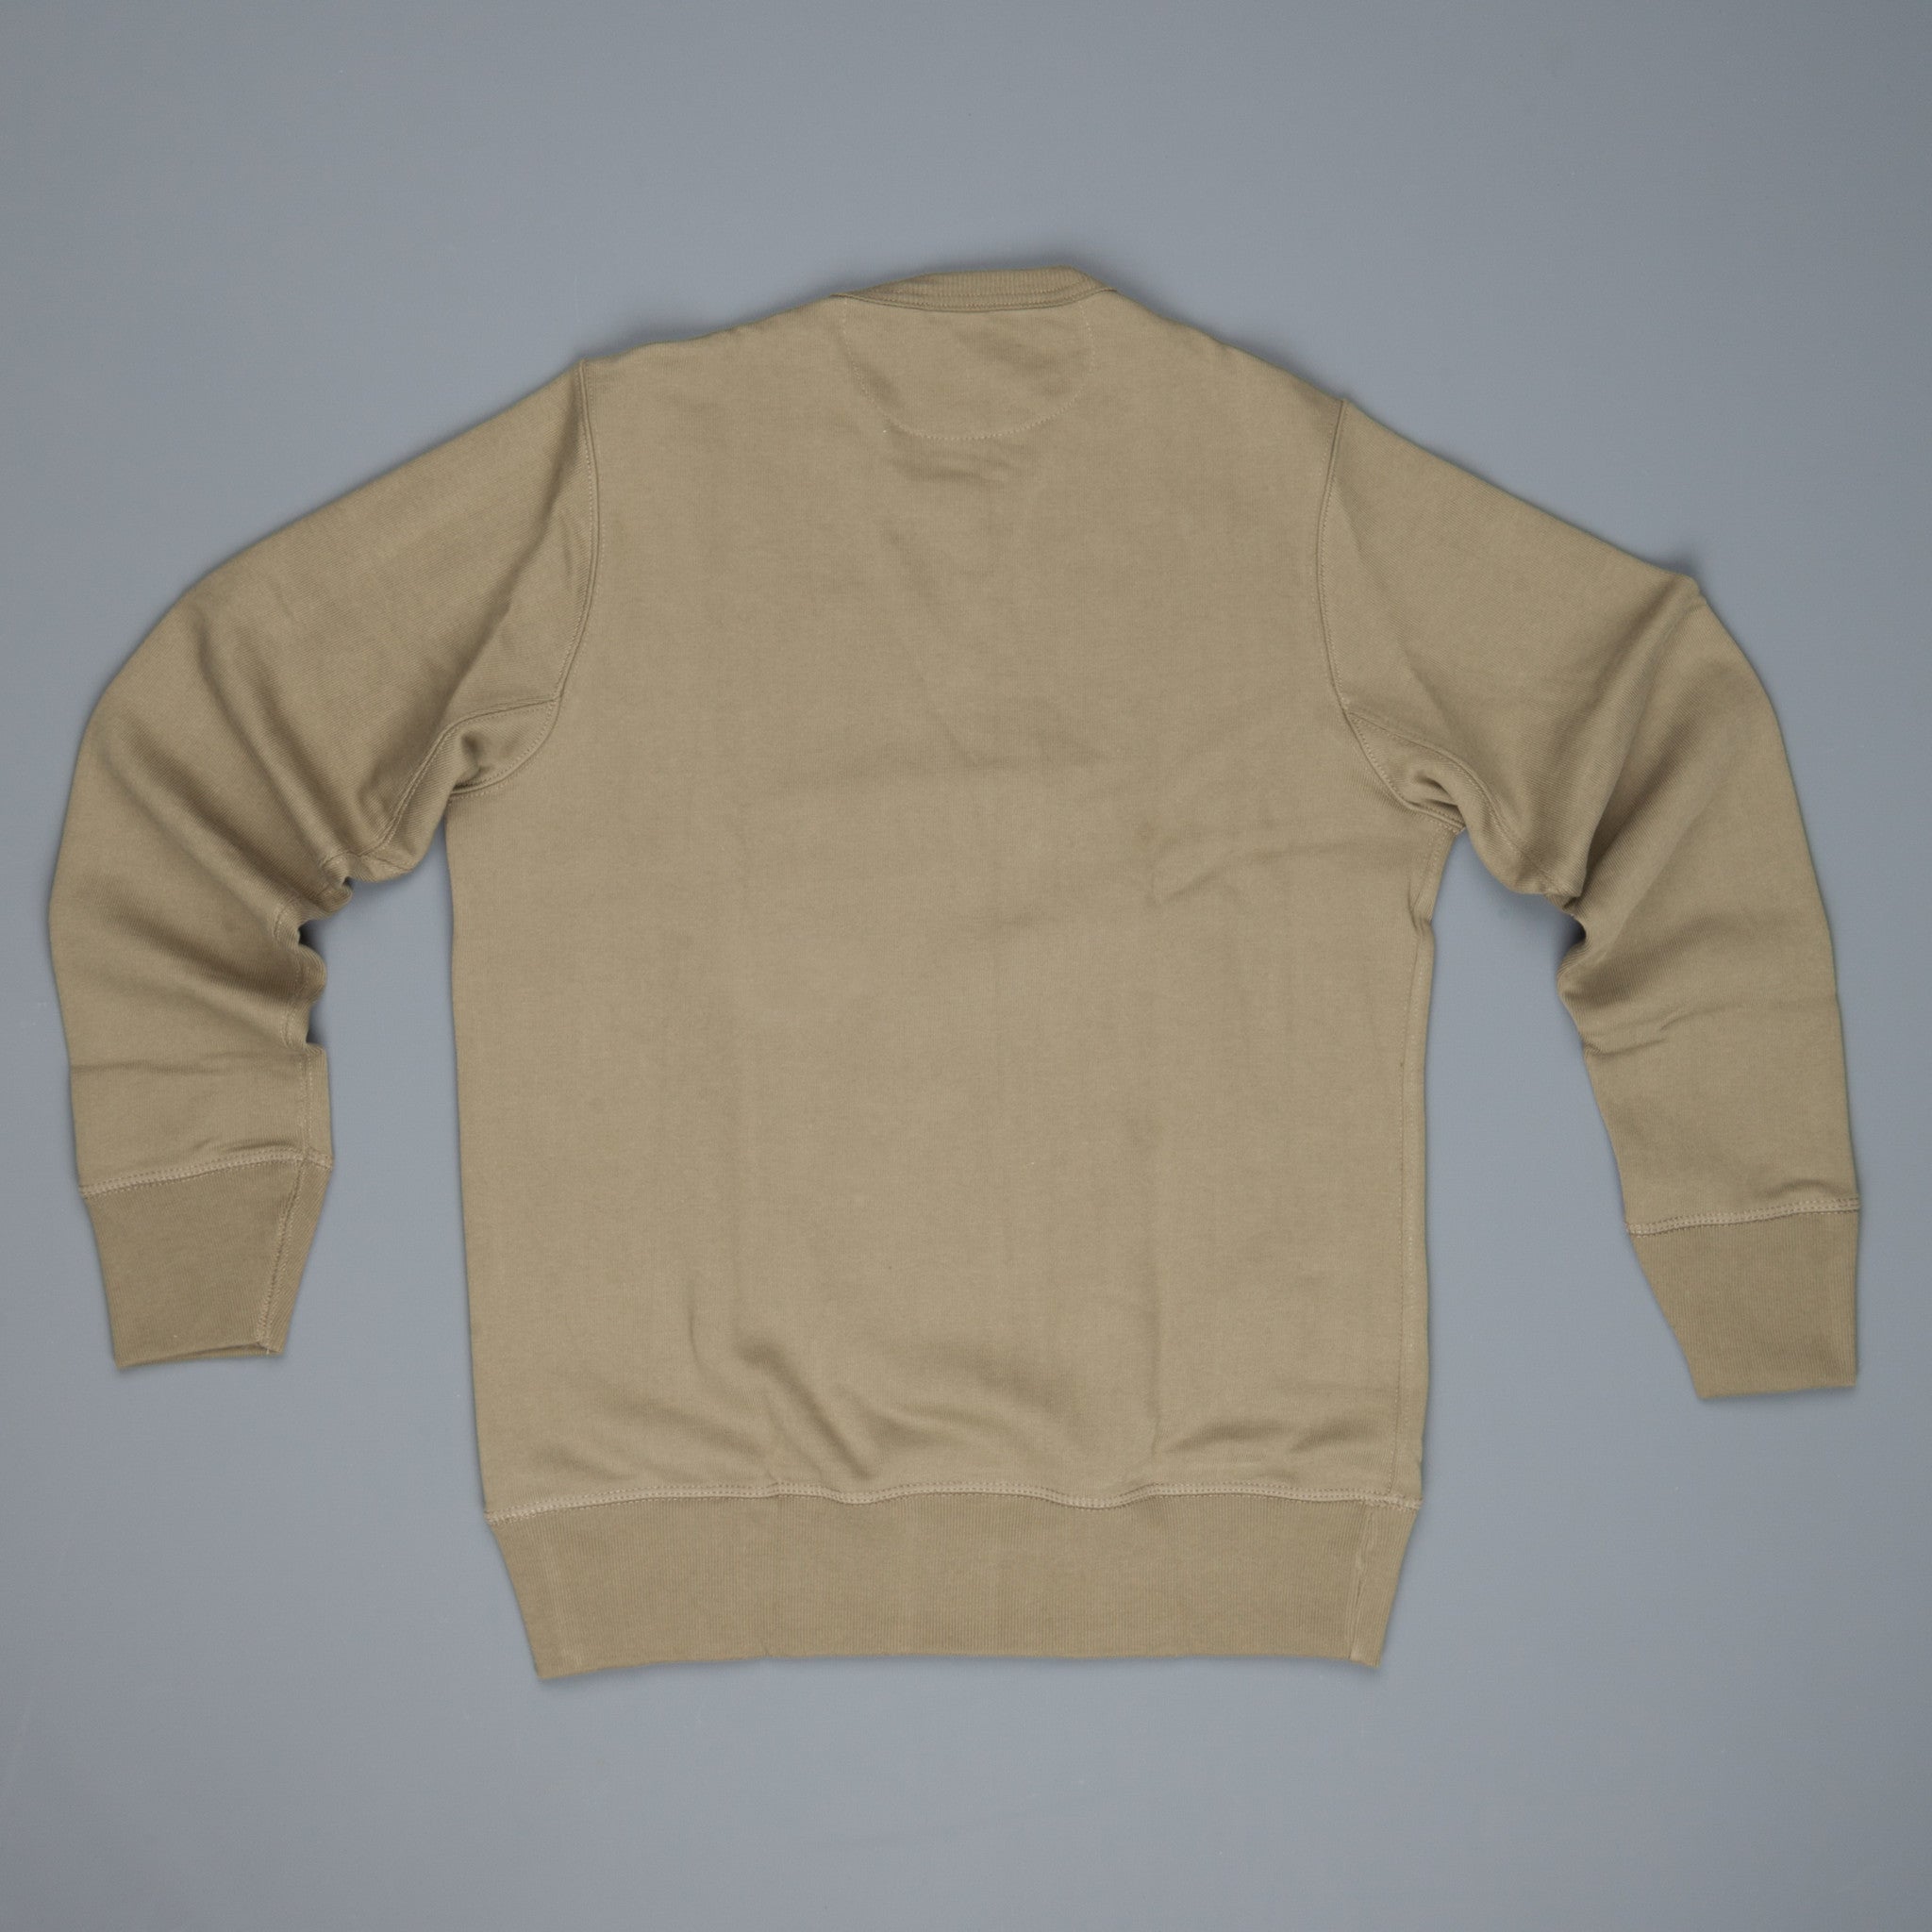 Merz B Schwanen 3s48 Strong fleece sweater Army